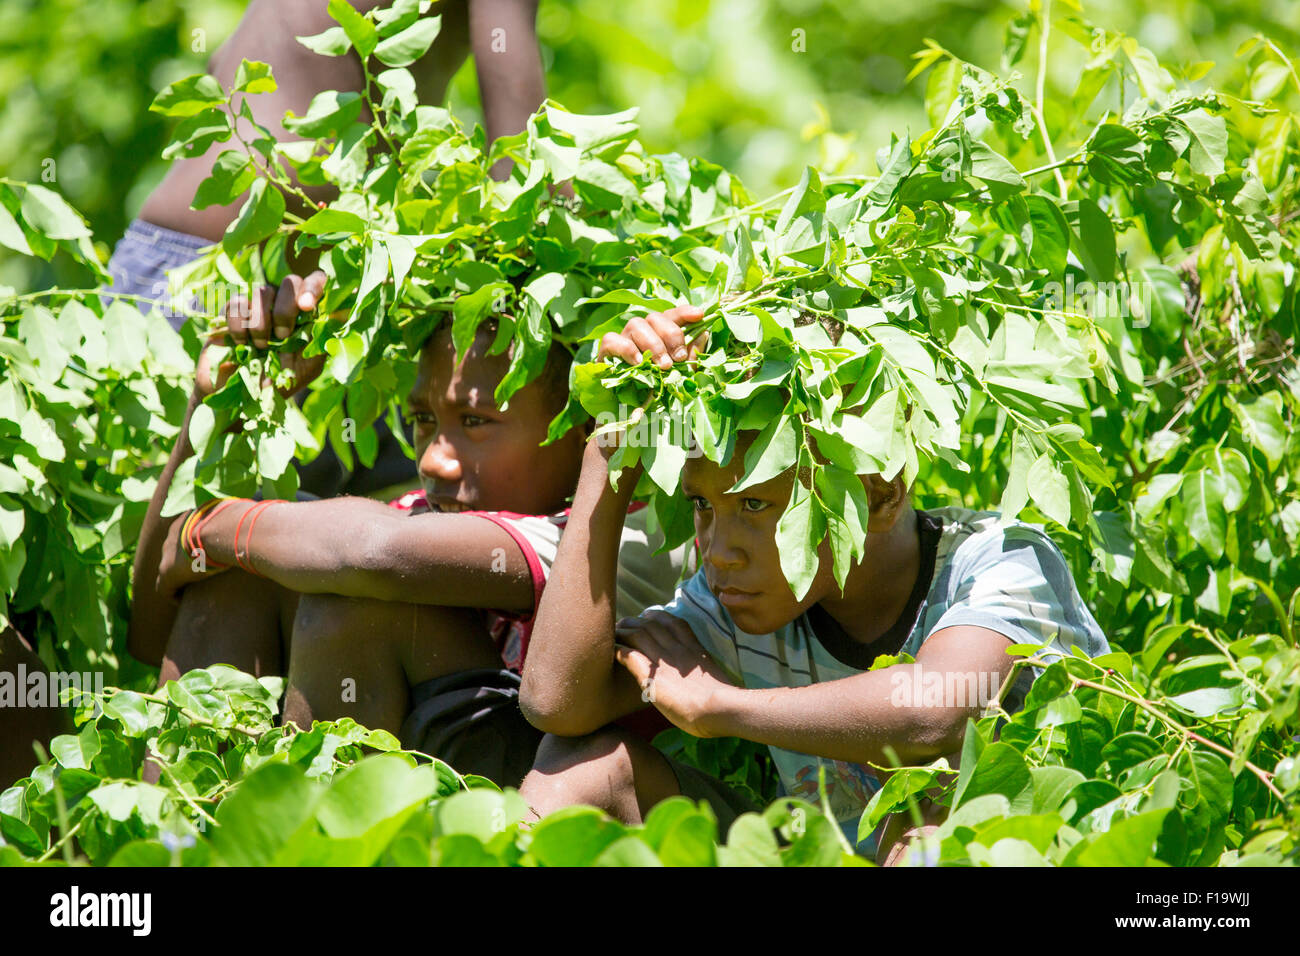 Solomon Islands, Makira-Ulawa Province, Owaraha aka Santa Ana, local kids seek shade from sun. Stock Photo